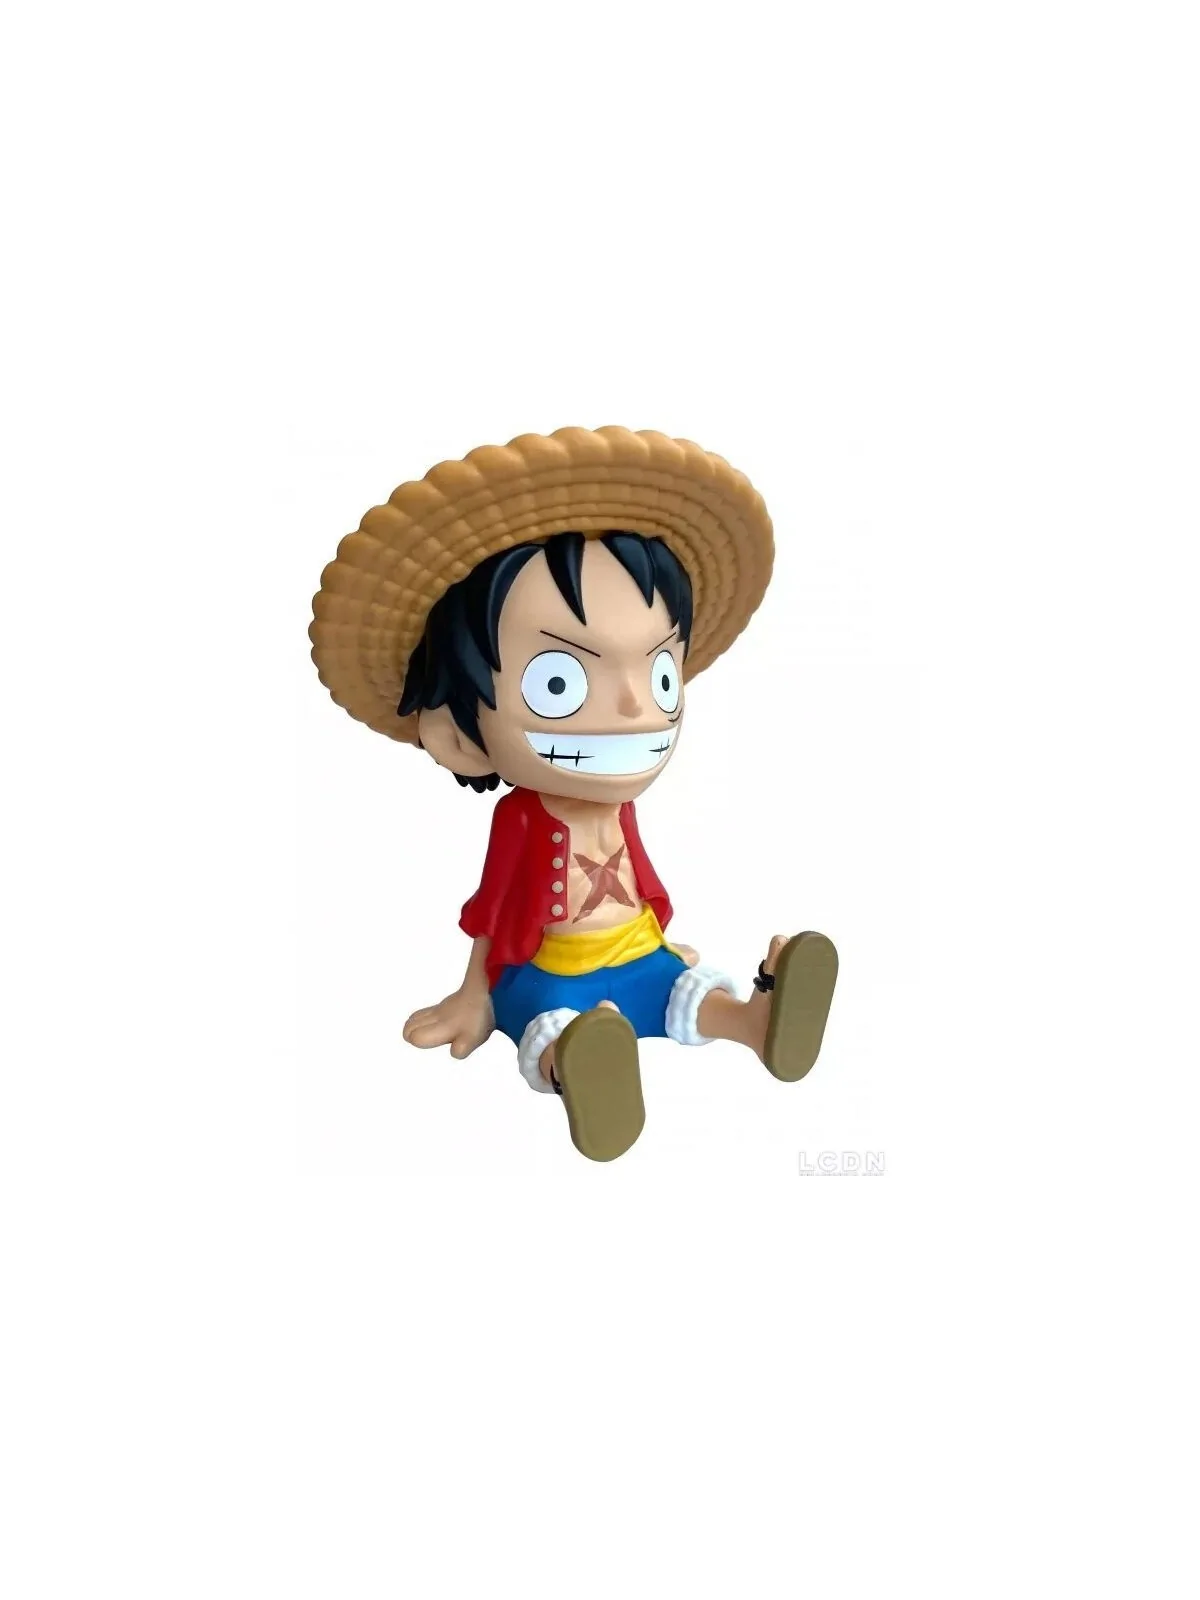 Comprar Figura Hucha Luffy One Piece 18cm barato al mejor precio 29,95